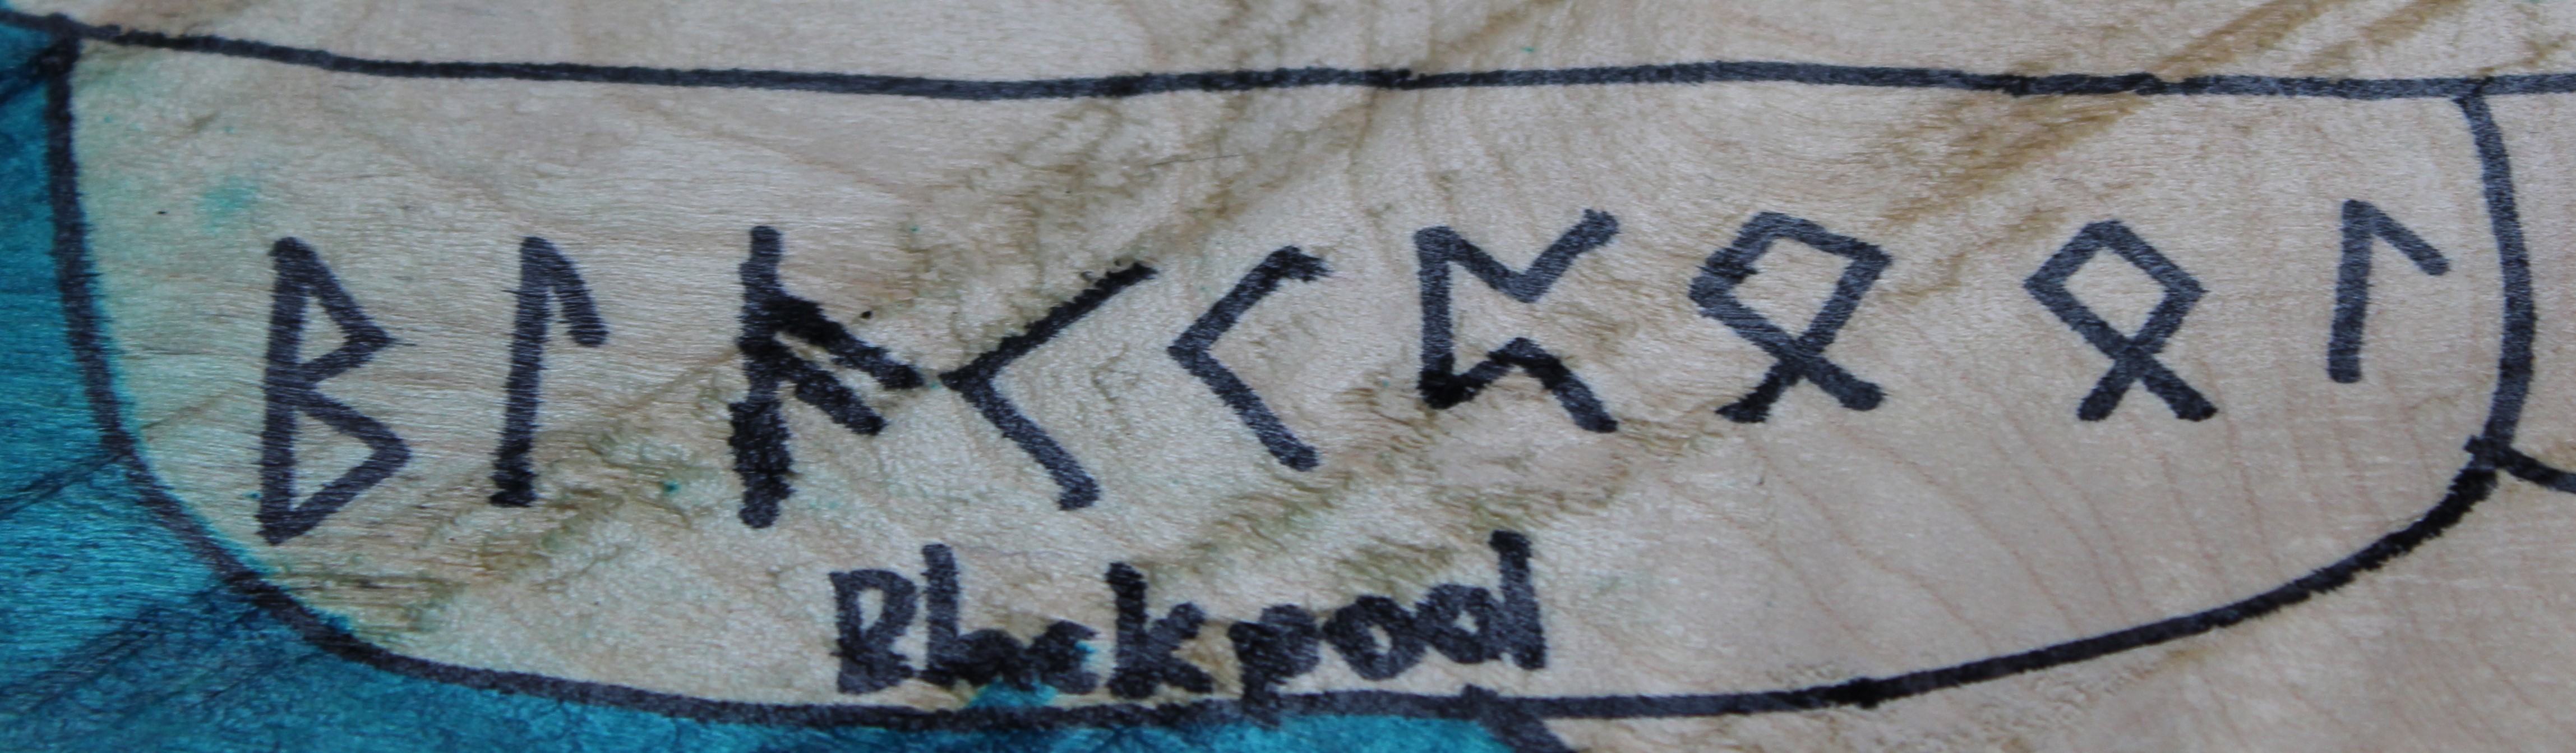 Blackpool written in runes